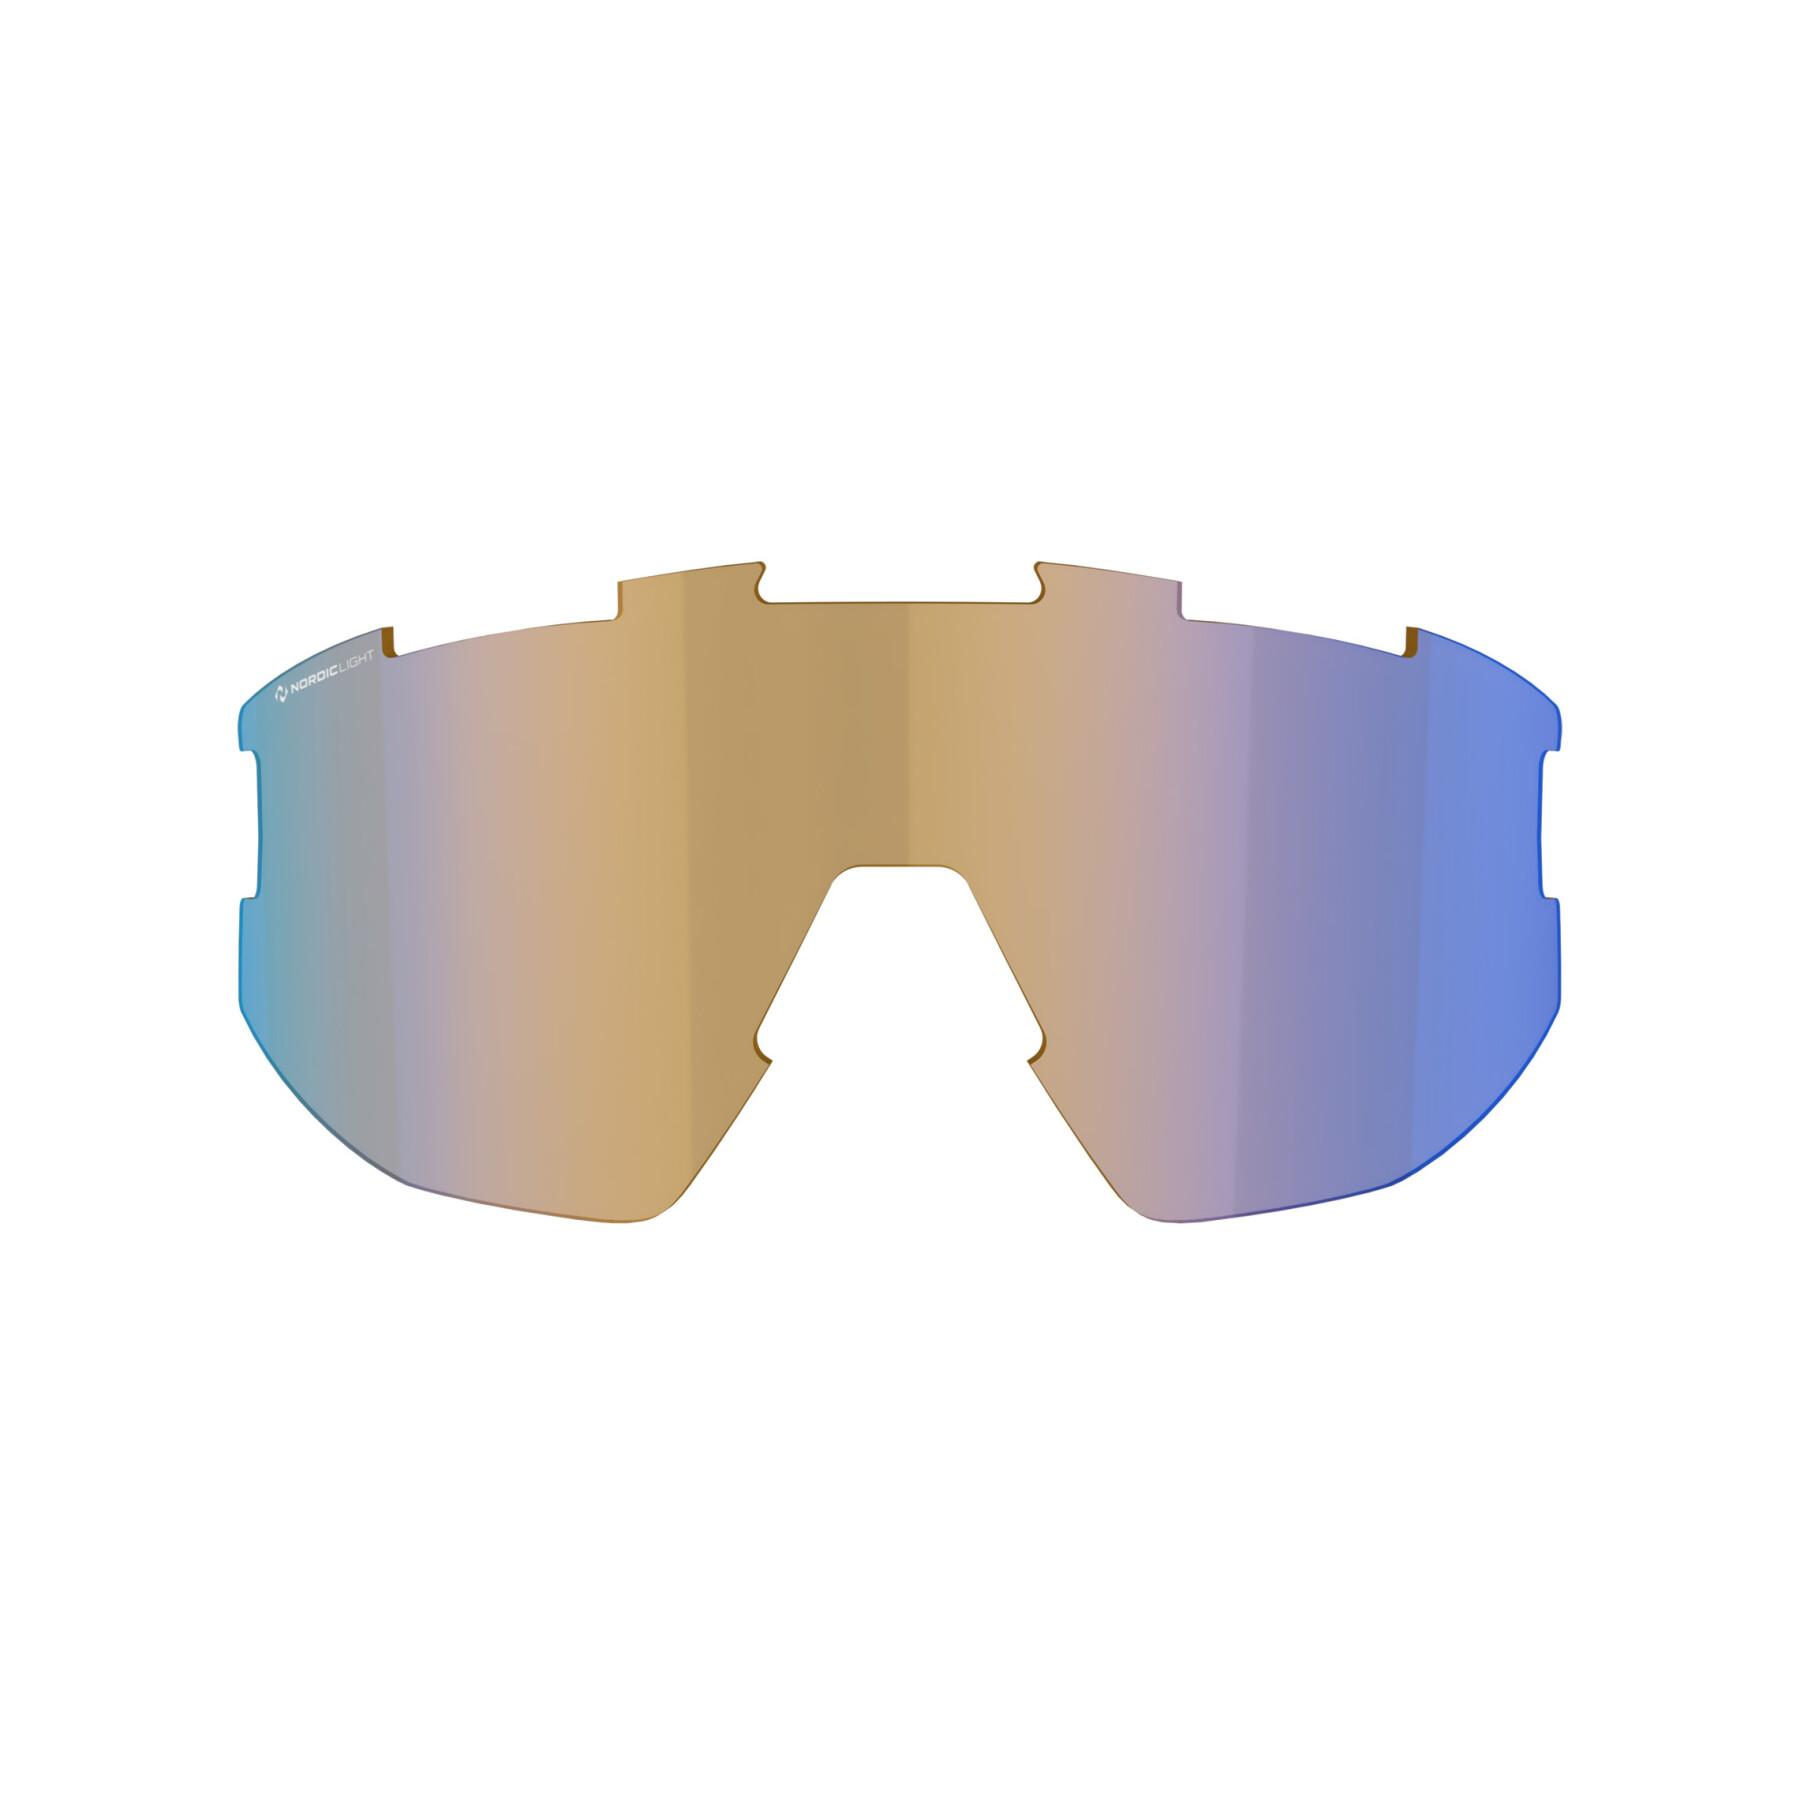 Verres de rechange lunettes Bliz Vision nano optic